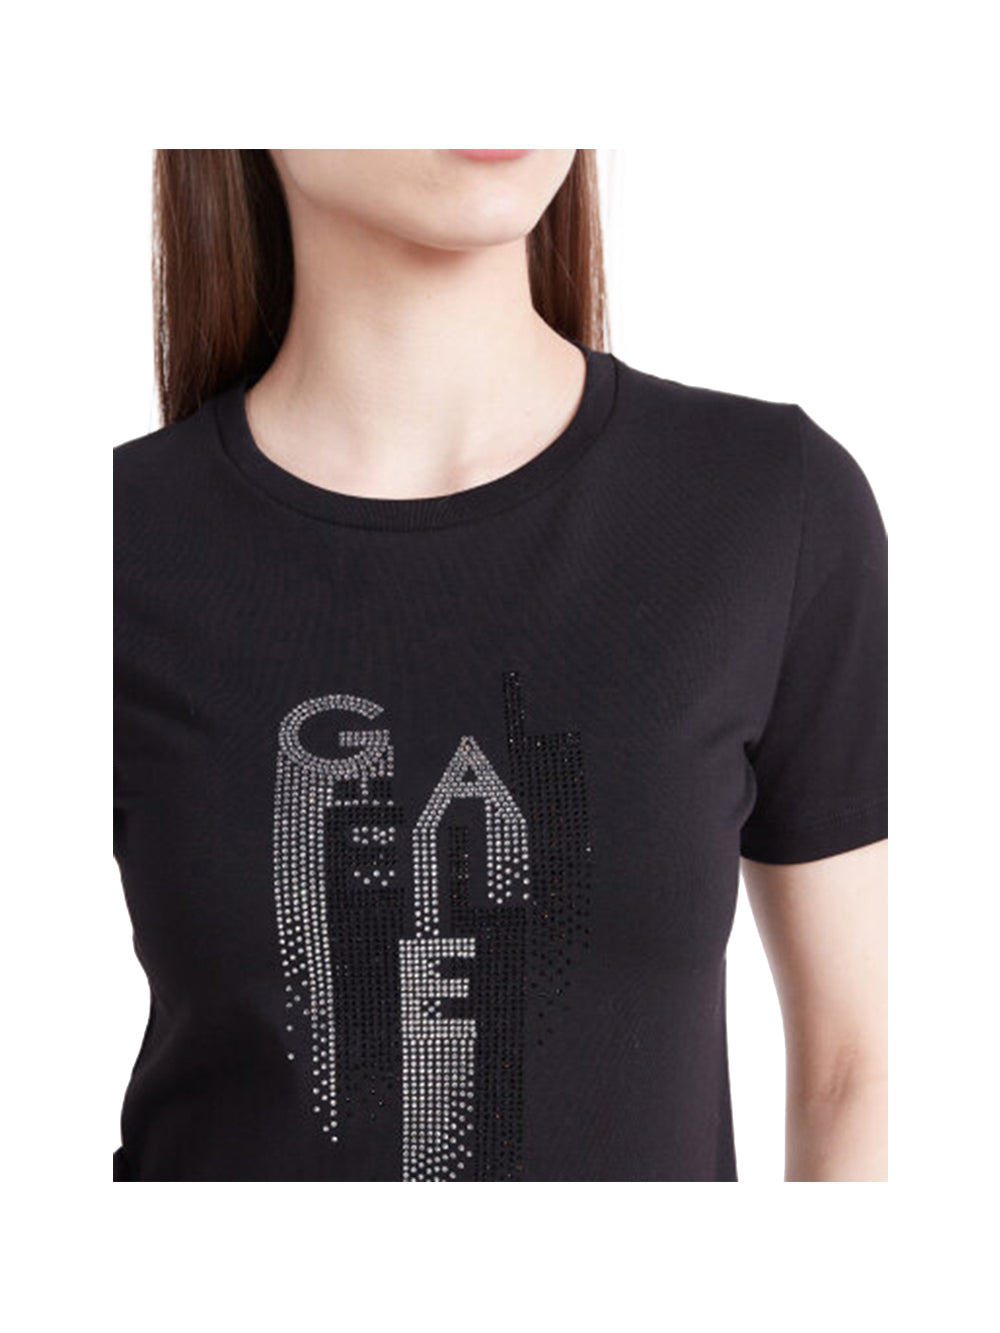 GAELLE PARIS 2USCITA T-shirt Donna Nero girocollo con logo glitterato Nero